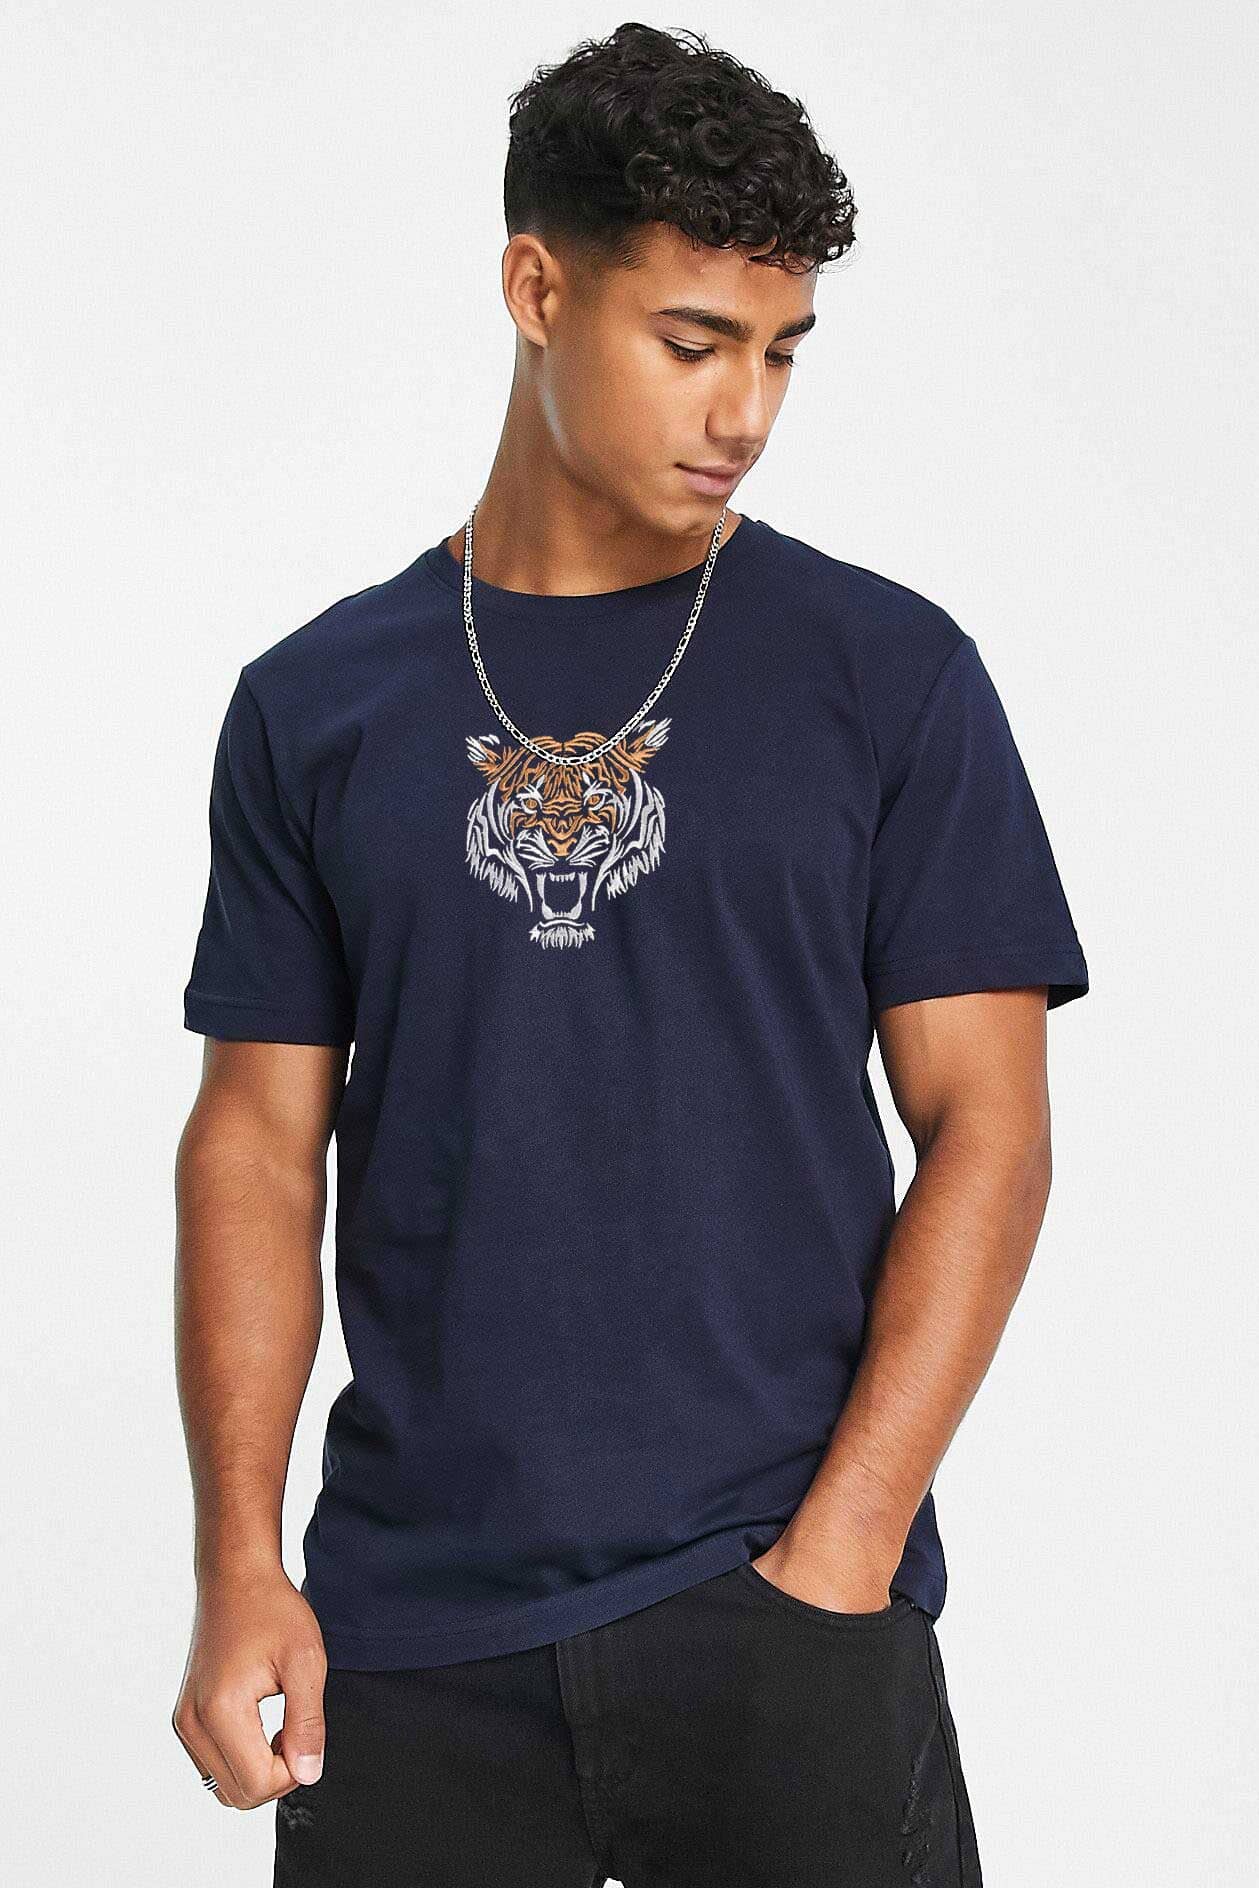 Polo Republica Men's Roar Tiger Embroidered Crew Neck Tee Shirt